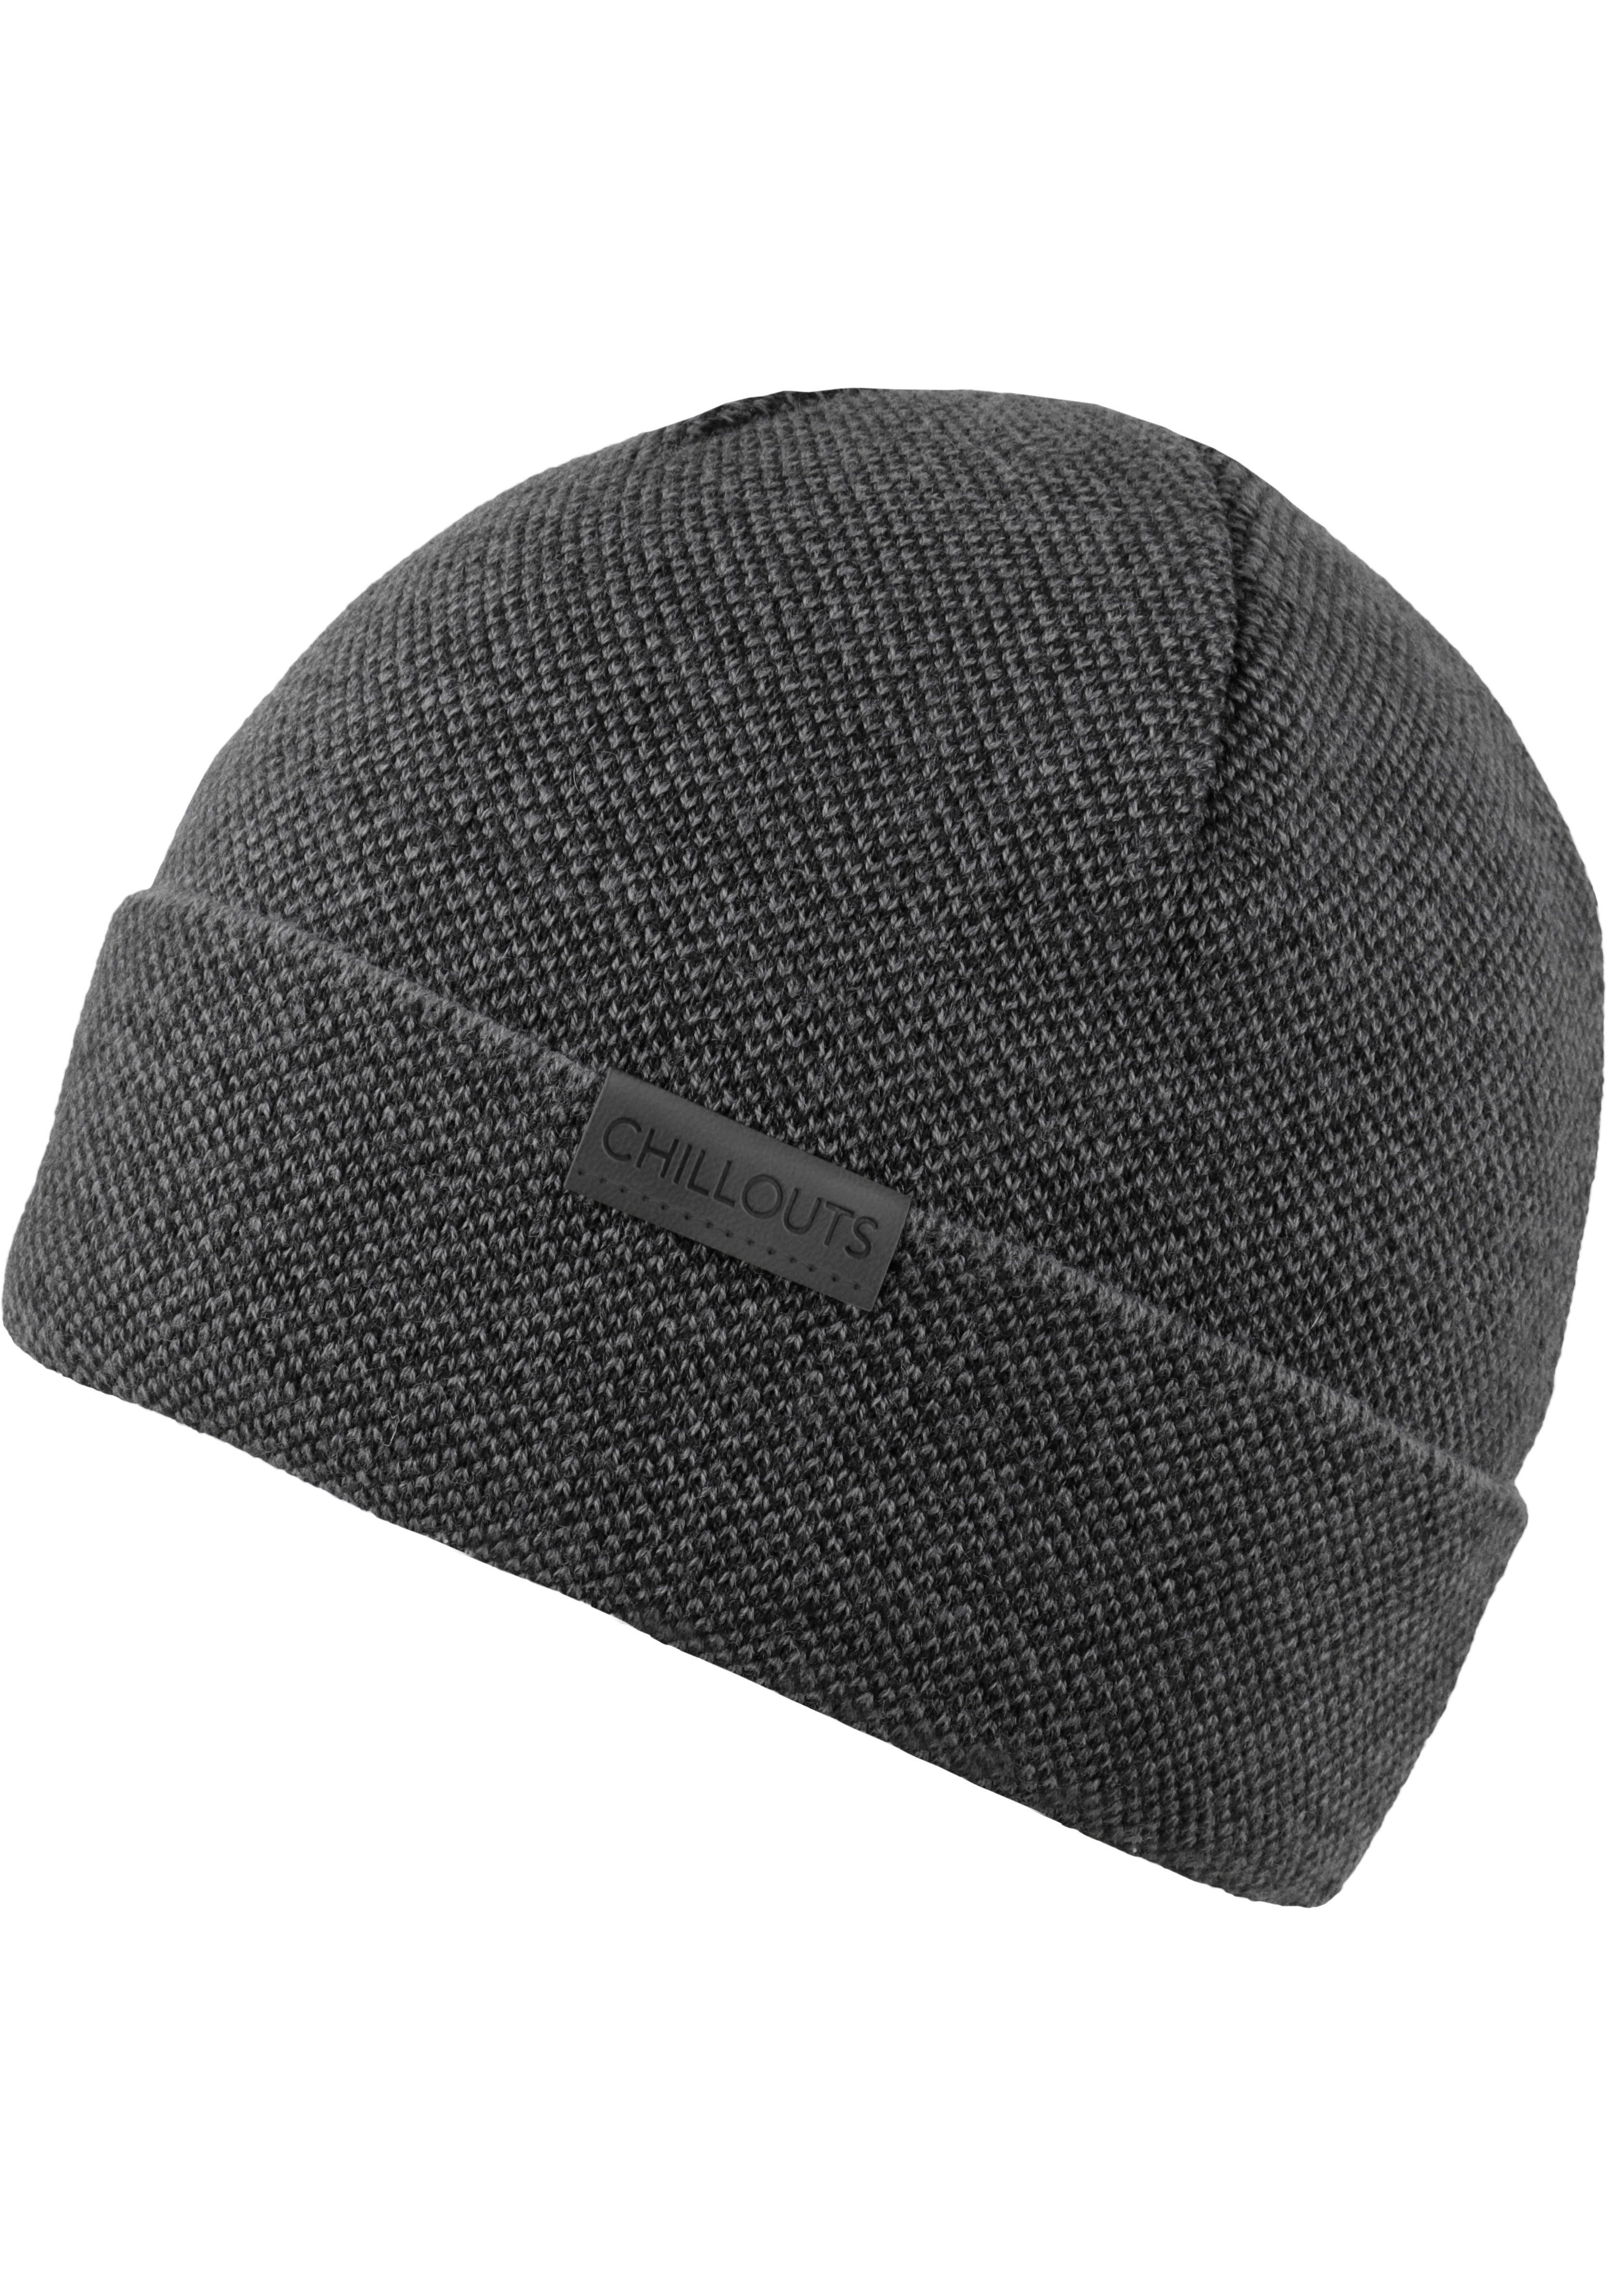 chillouts Strickmütze Kilian Hat dark grey | Strickmützen